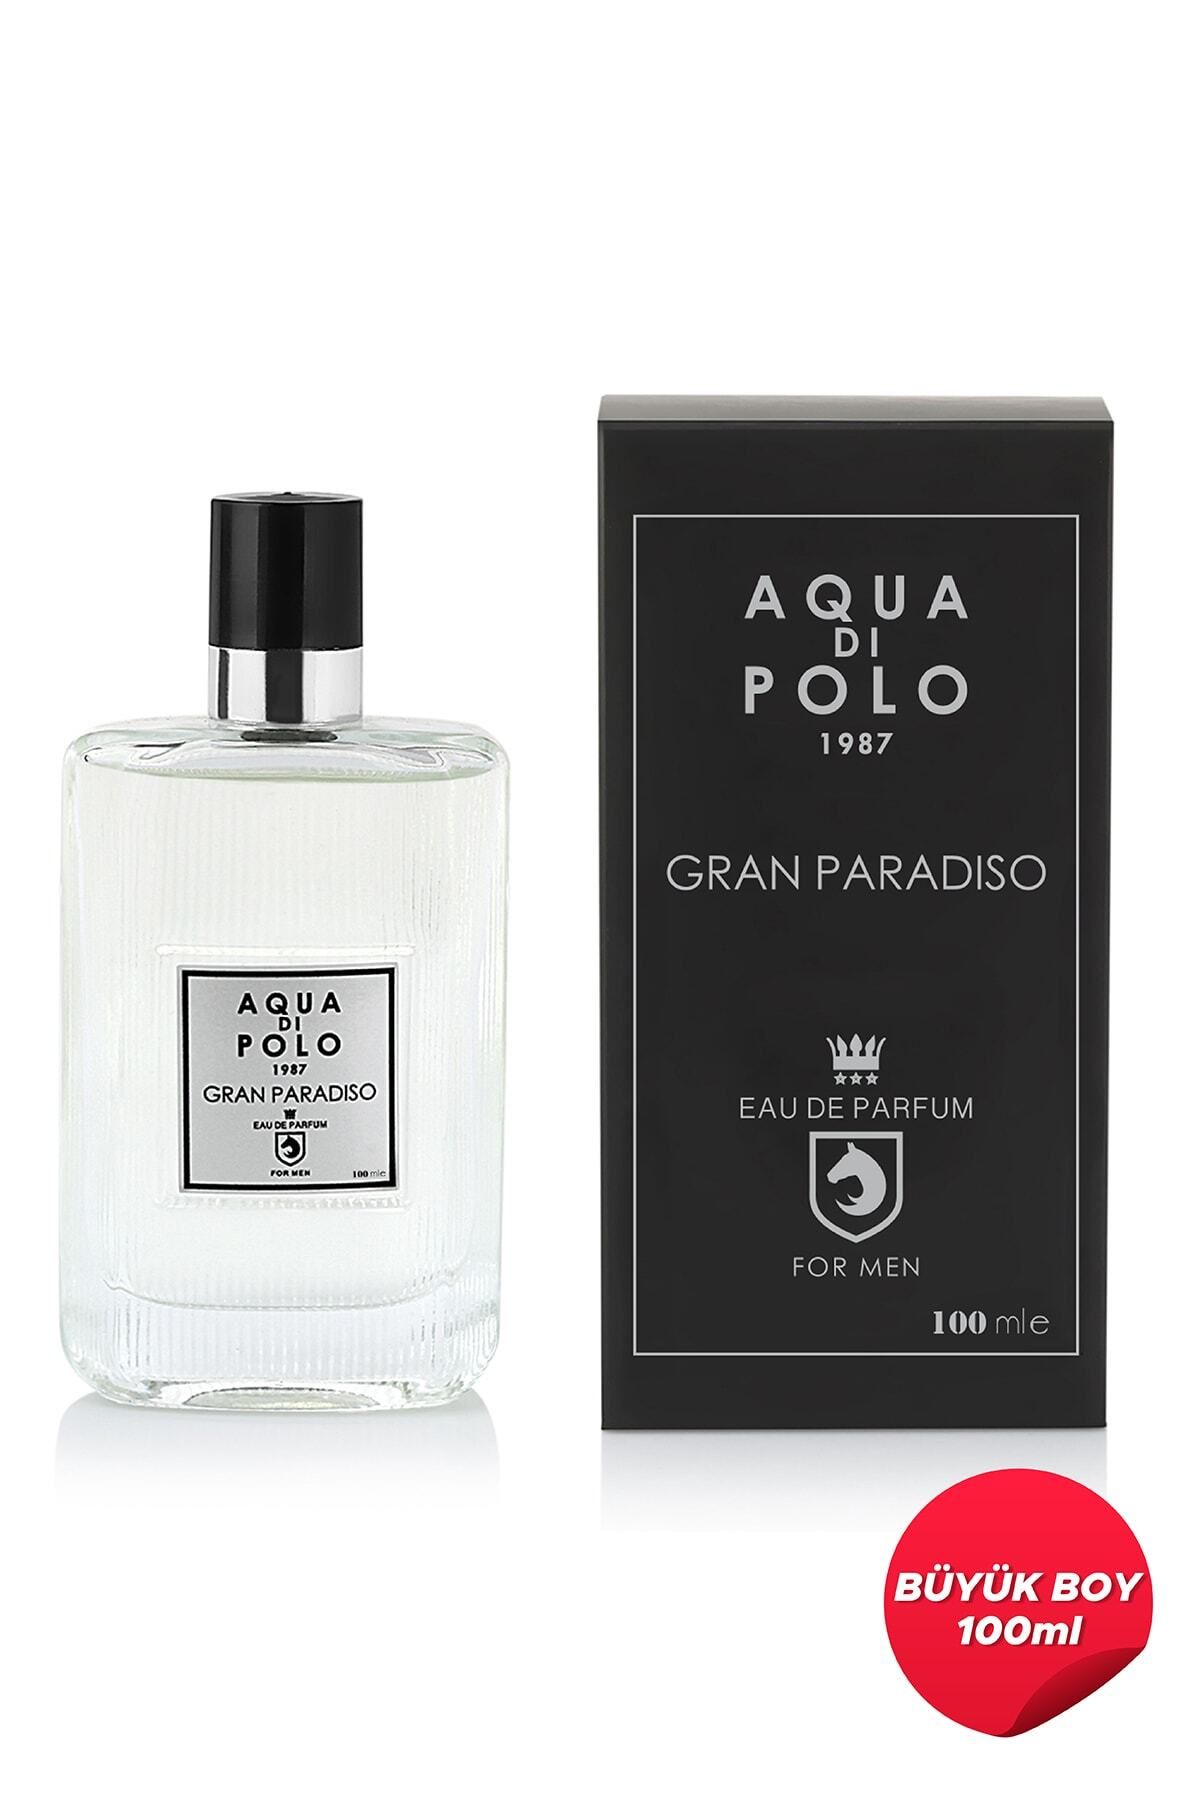 Aqua Di Polo 1987 Gran Paradiso Edp 100 ml Erkek Parfüm  Apcn001801